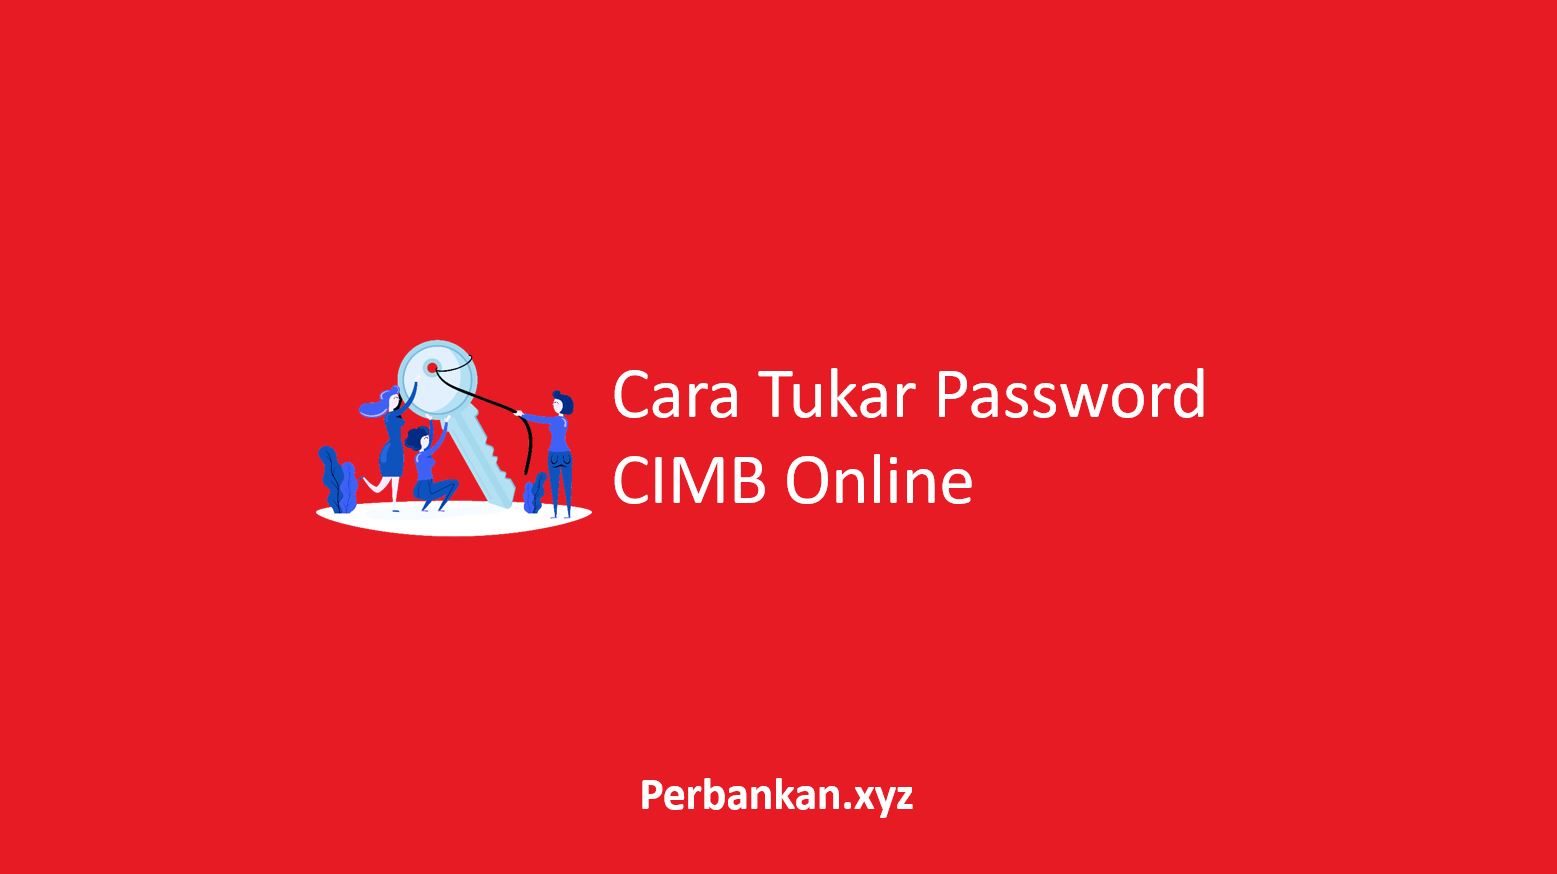 Cara Tukar Password CIMB Online